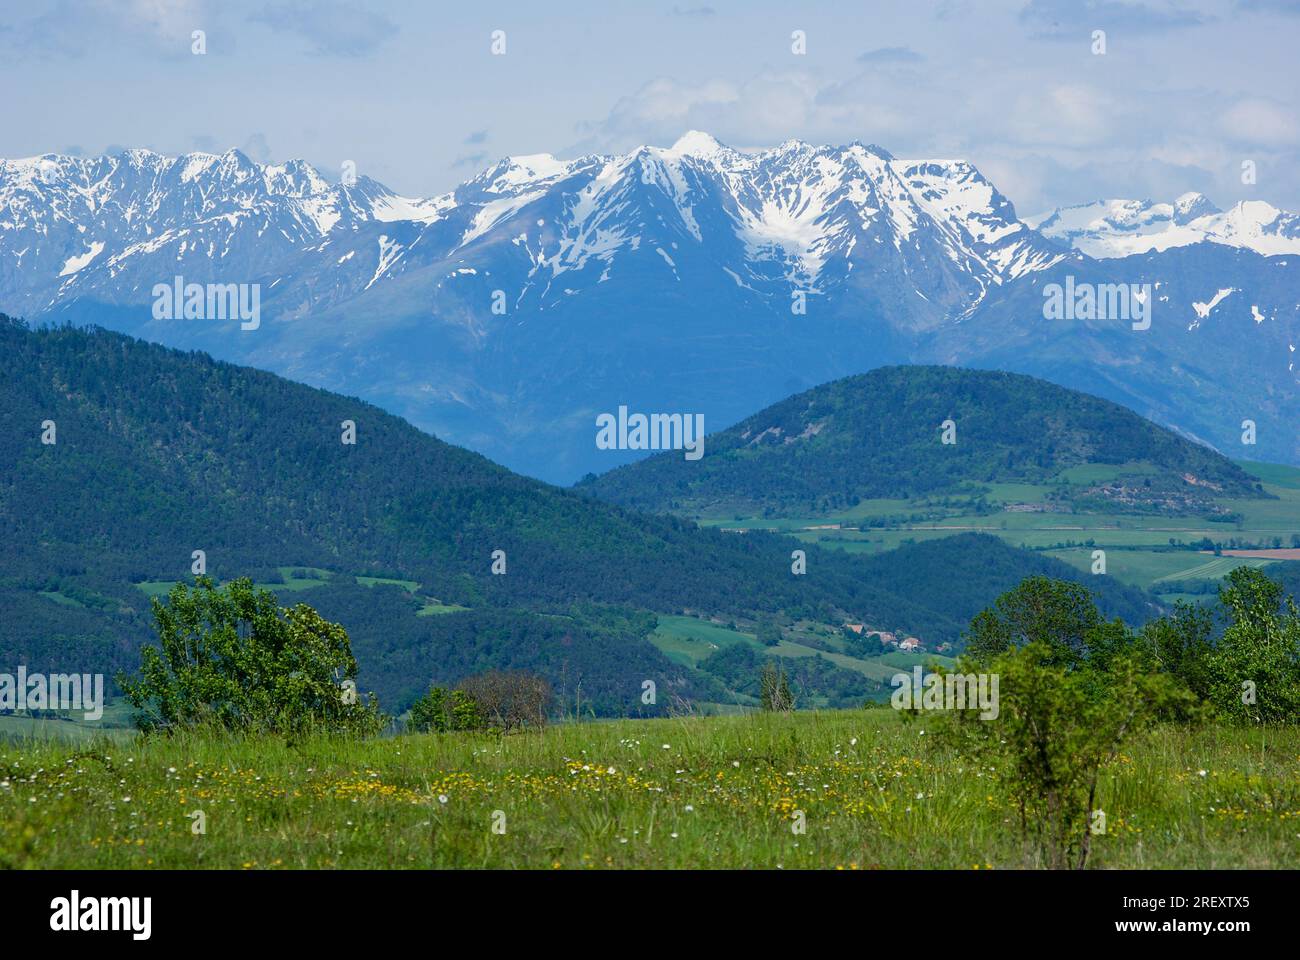 Paisaje con colinas verdes frente a una cadena montañosa nevada en los Altos Alpes en Francia. Foto de stock